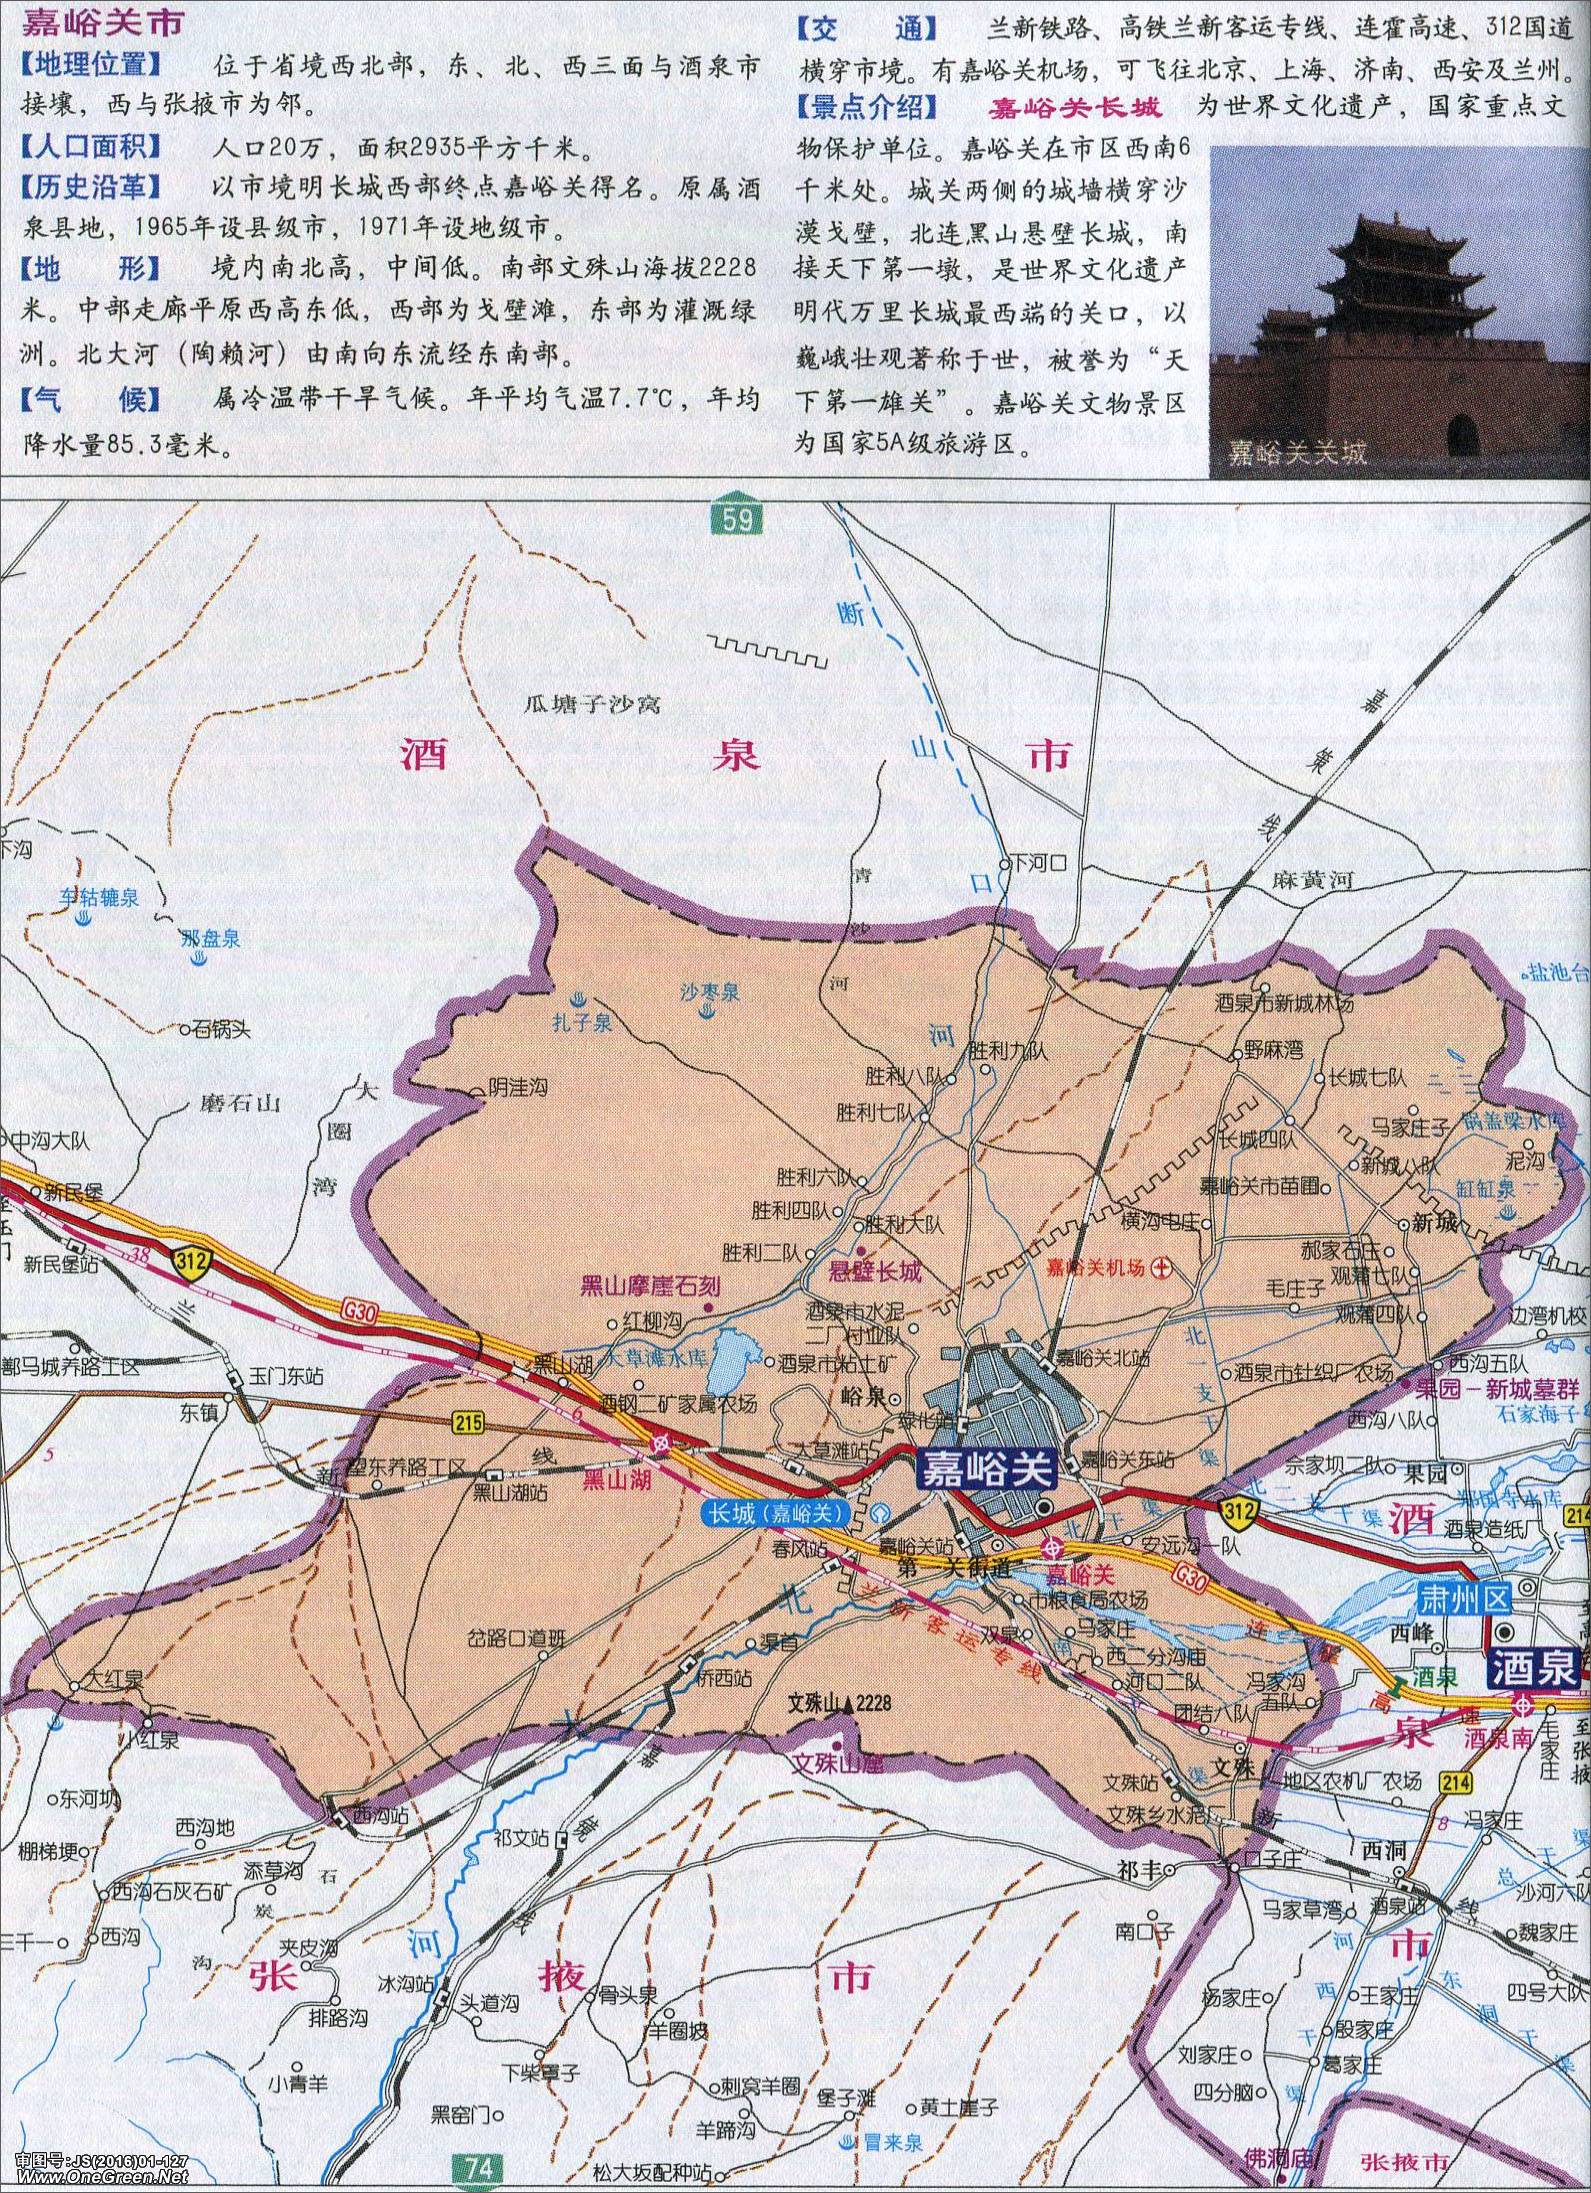 武威  张掖  平凉  酒泉  庆阳  定西  陇南  临夏  甘南 上一张地图图片